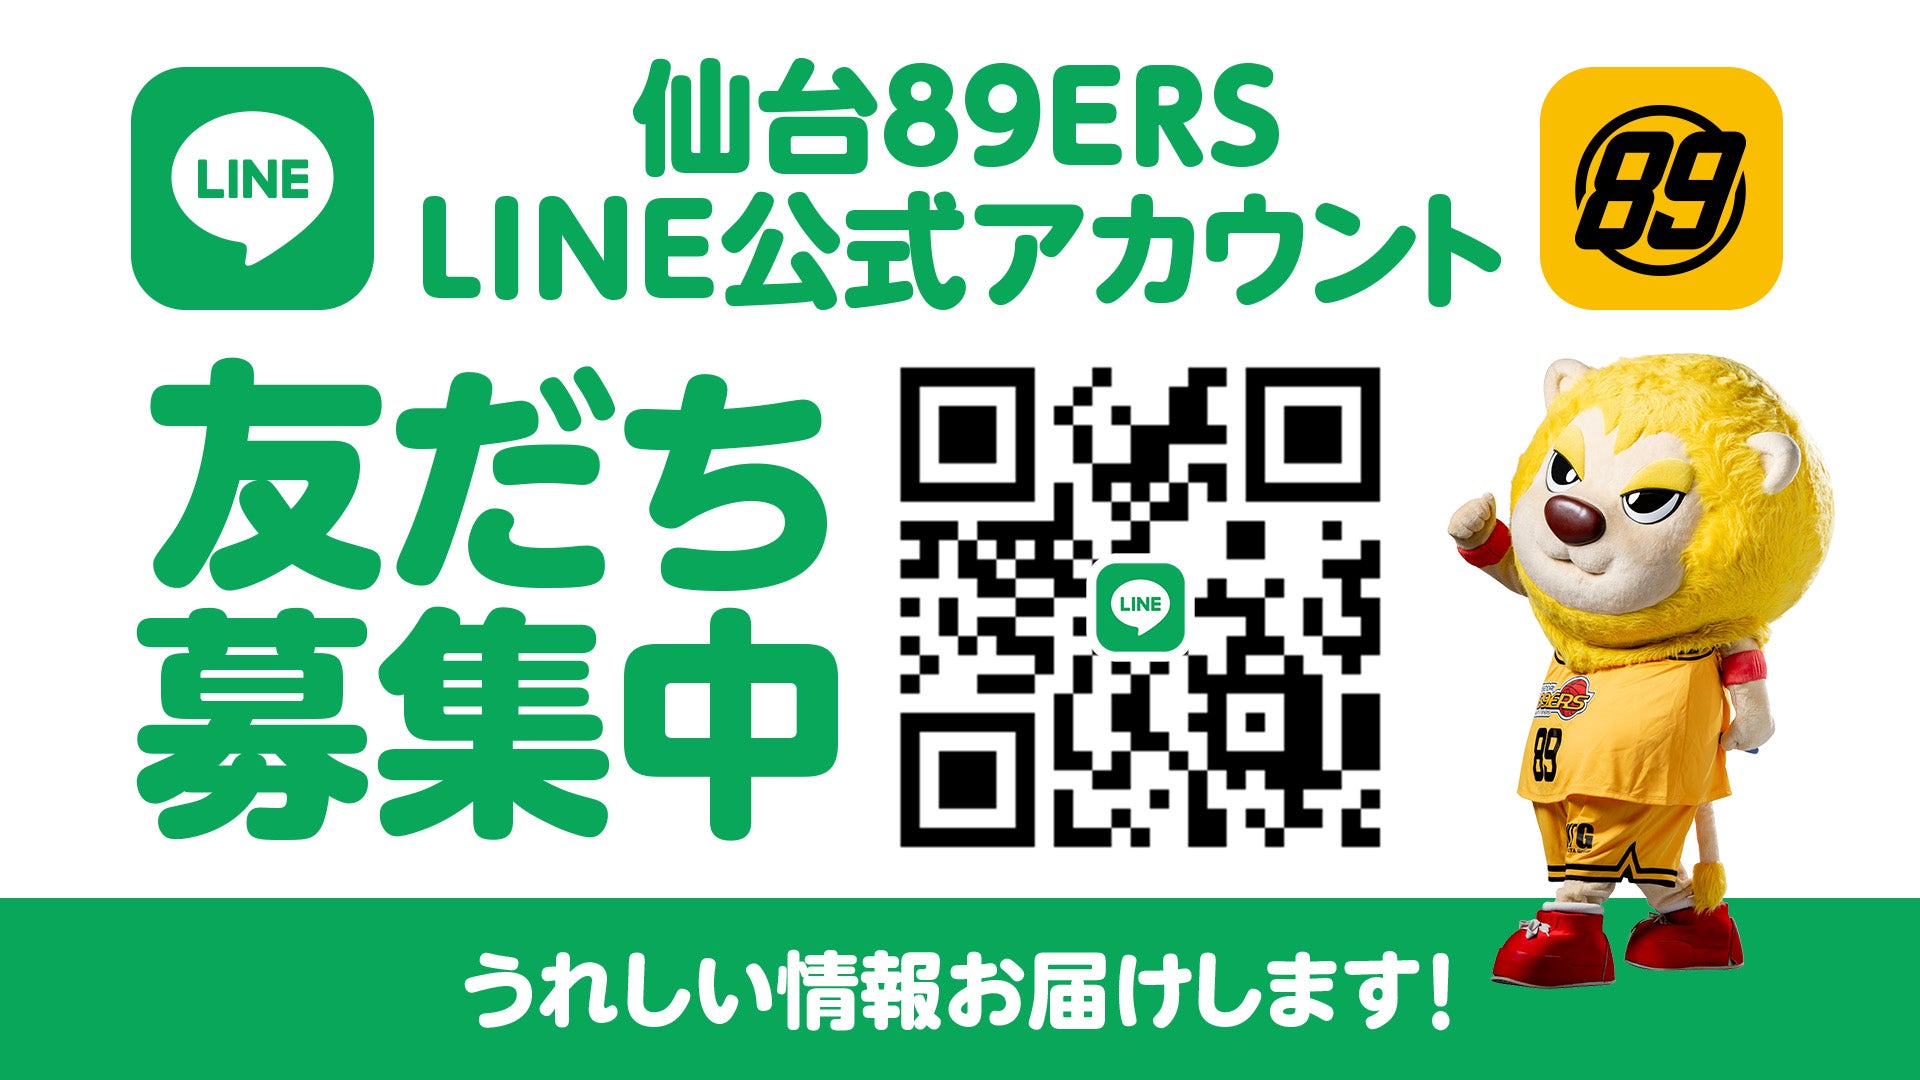 仙台89ERS LINE公式アカウント「友だち募集中」うれしい情報お届けします！